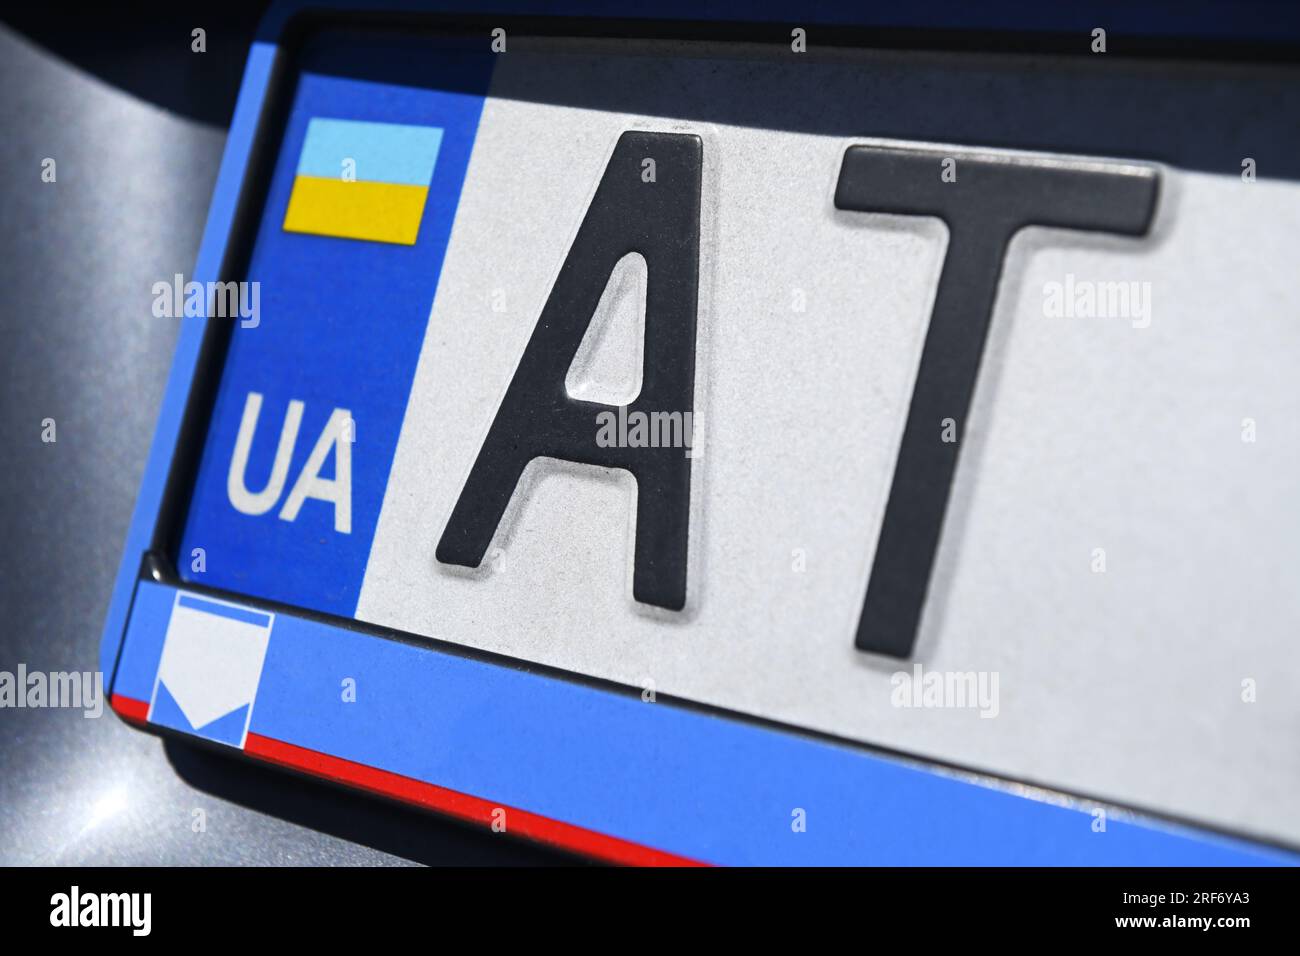 Fahrzeug mit ukrainischem Kennzeichen in Deutschland Stock Photo